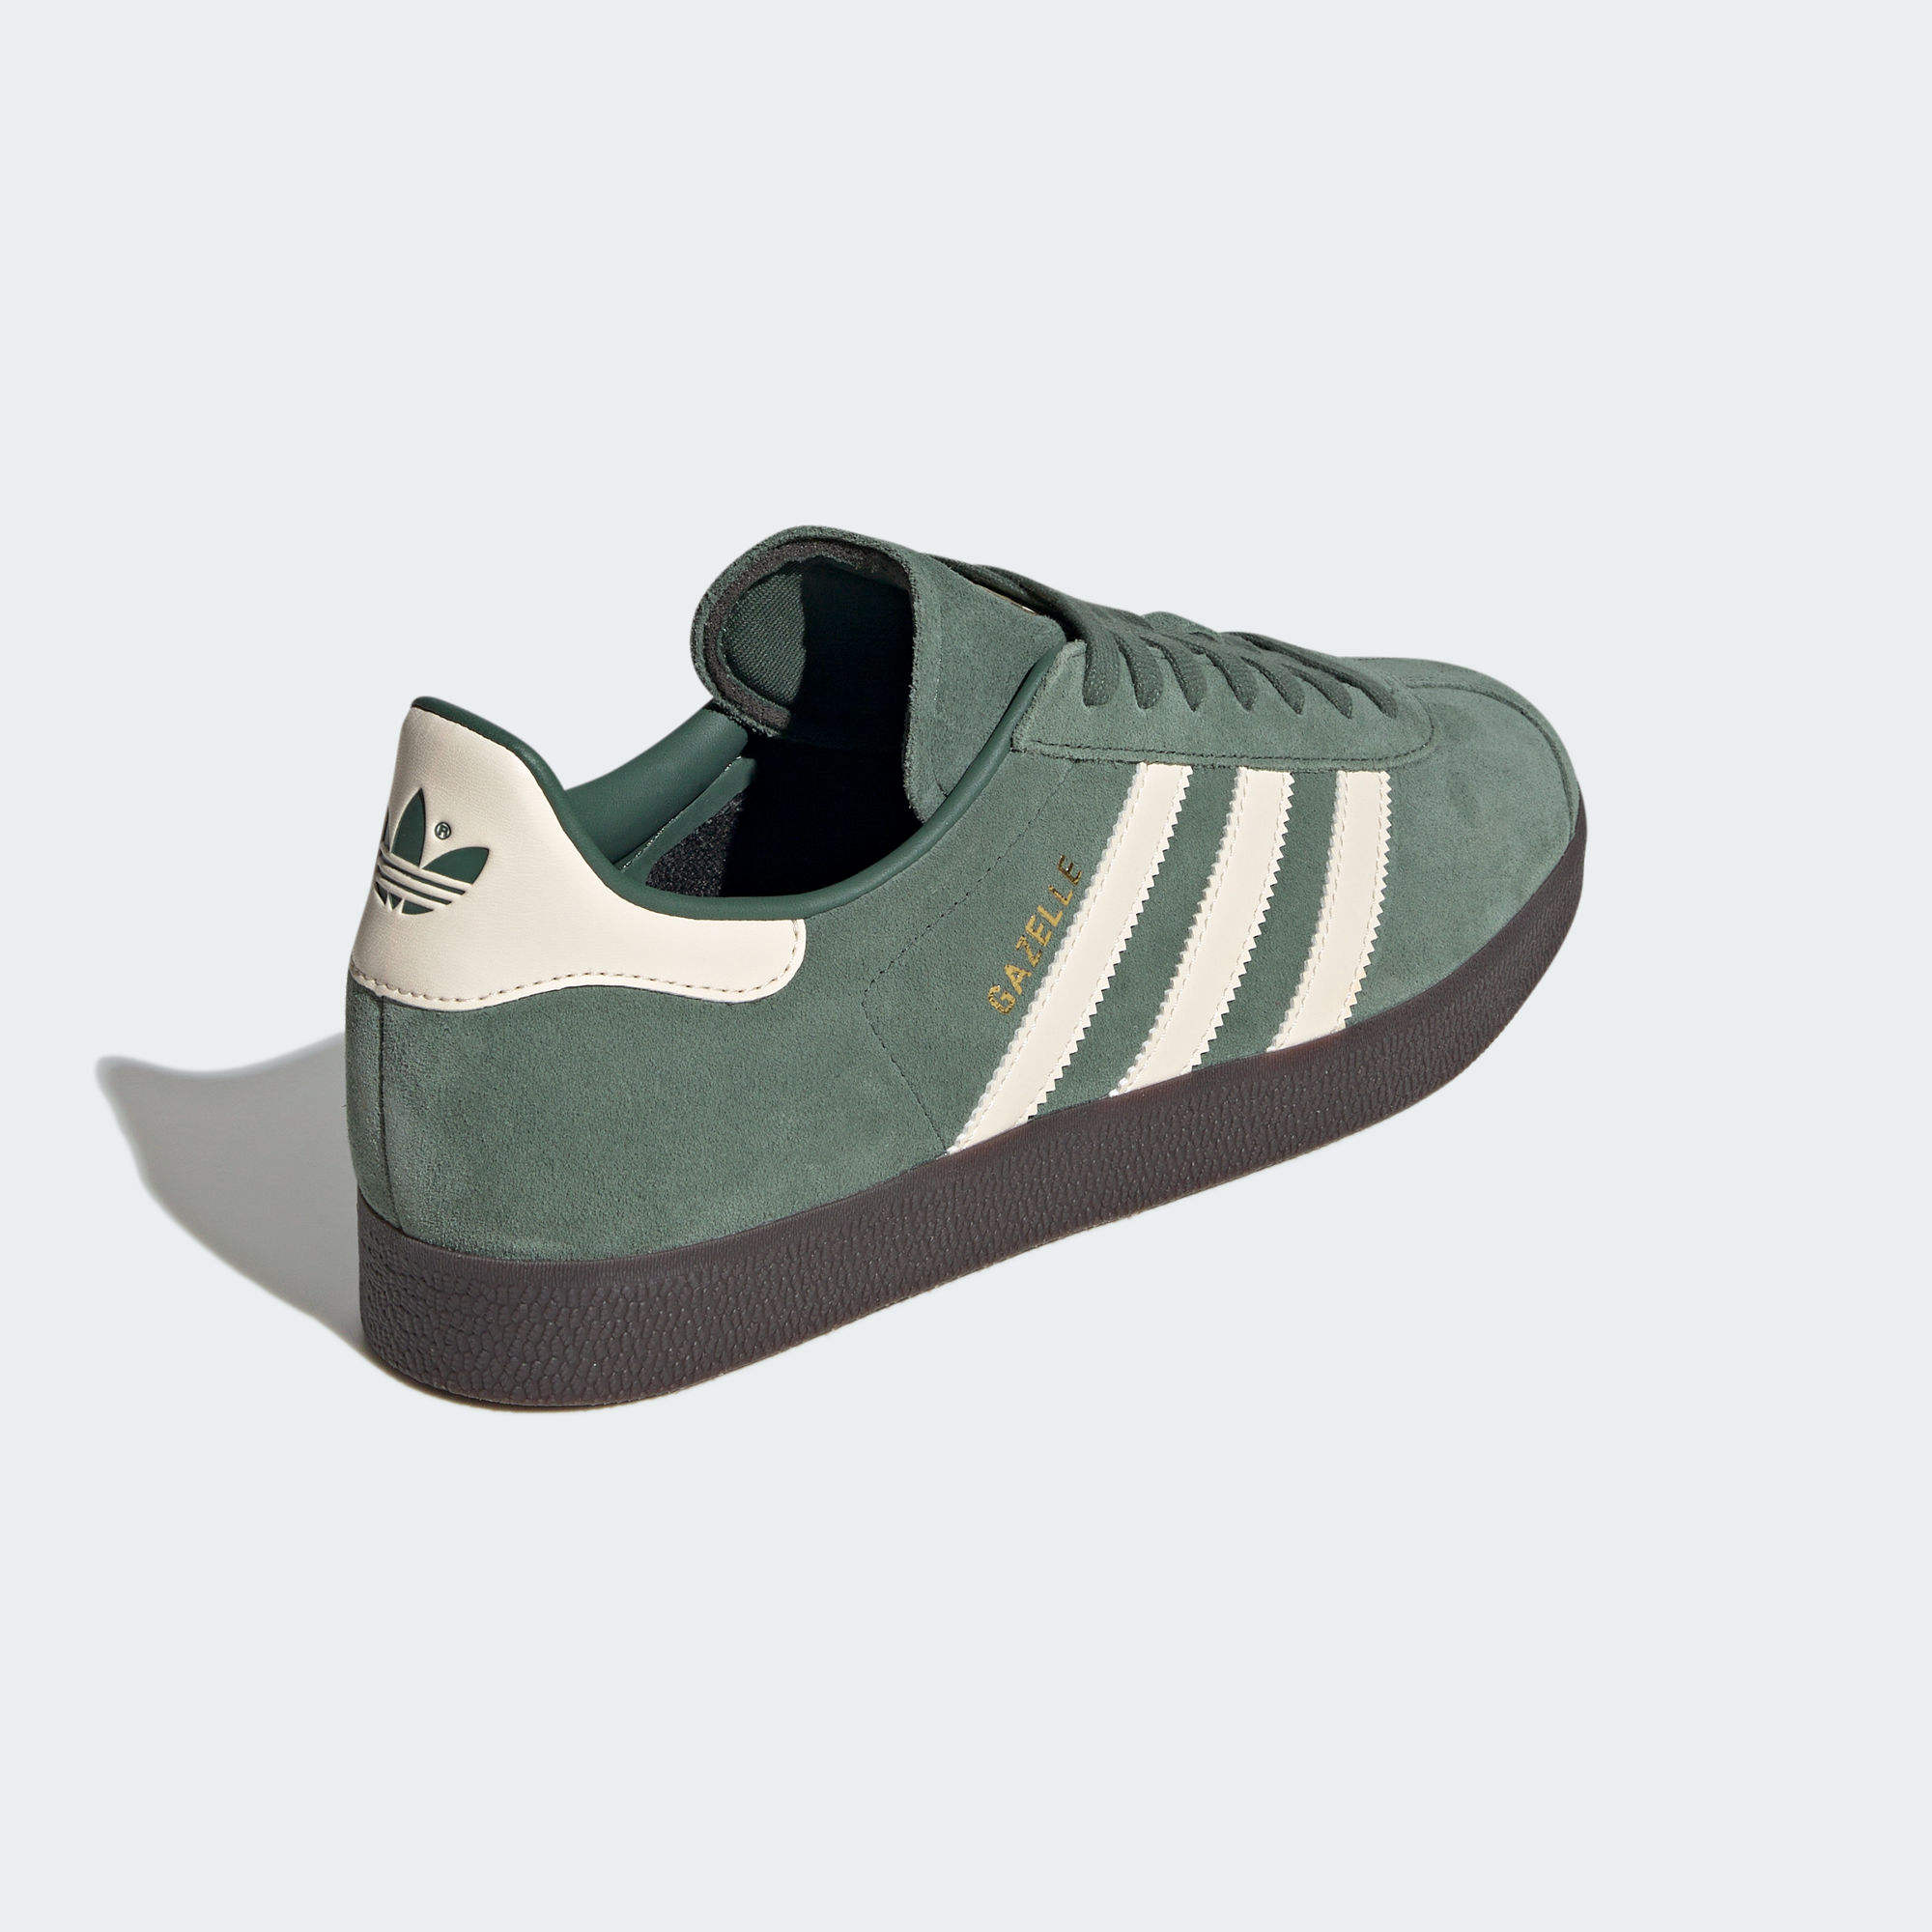 墨西哥隊GAZELLE 運動鞋- 灰色| 男子| adidas(愛迪達)香港官方網上商店